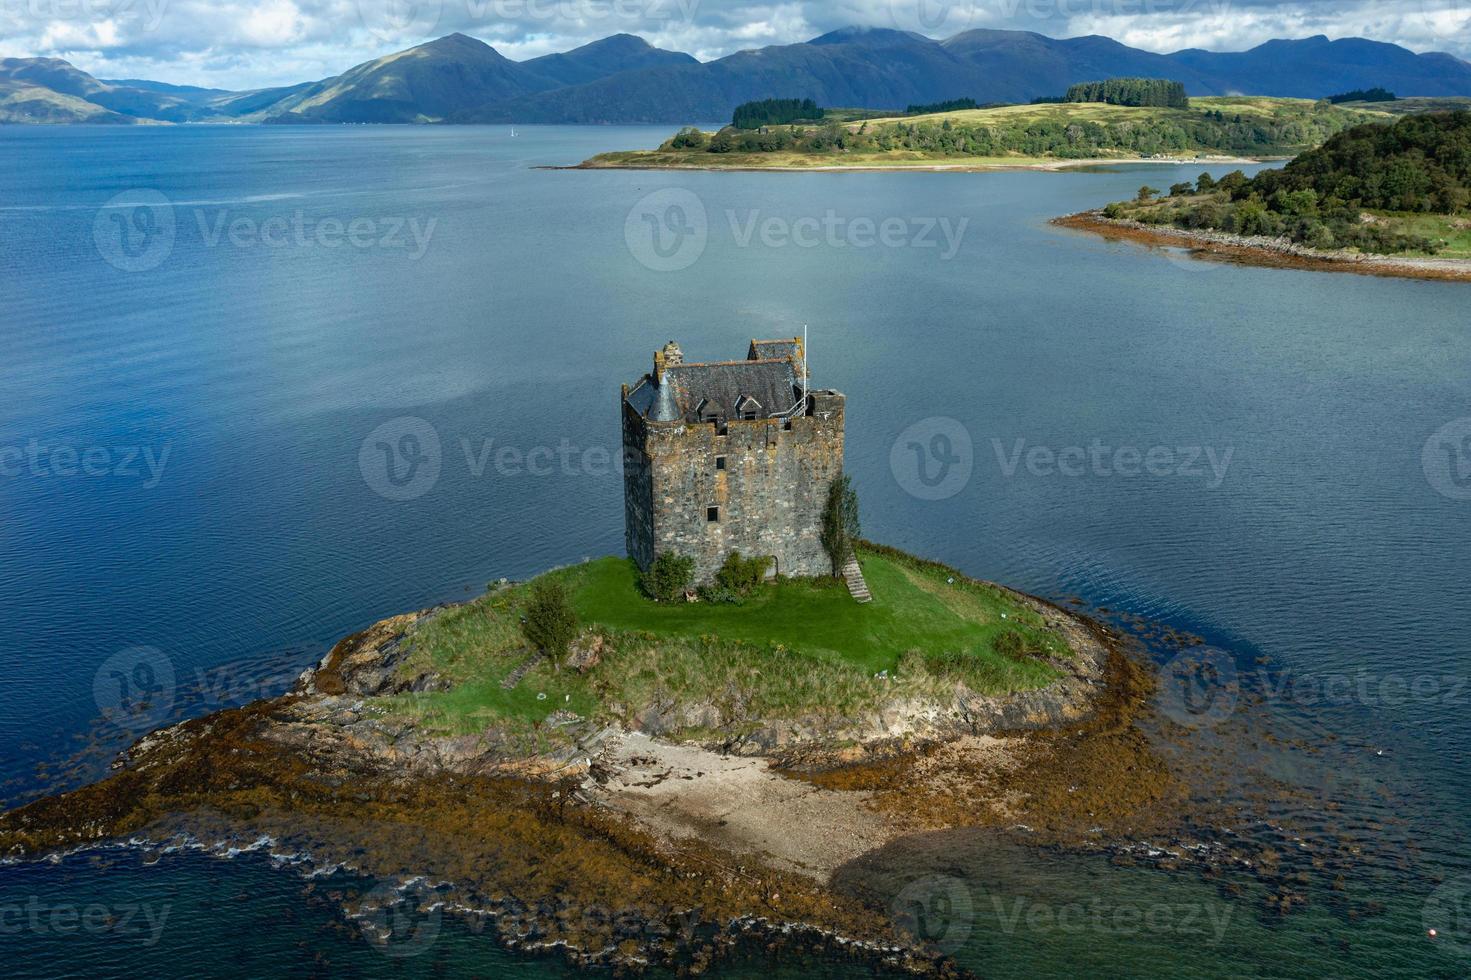 acosador del castillo, escocia, reino unido foto